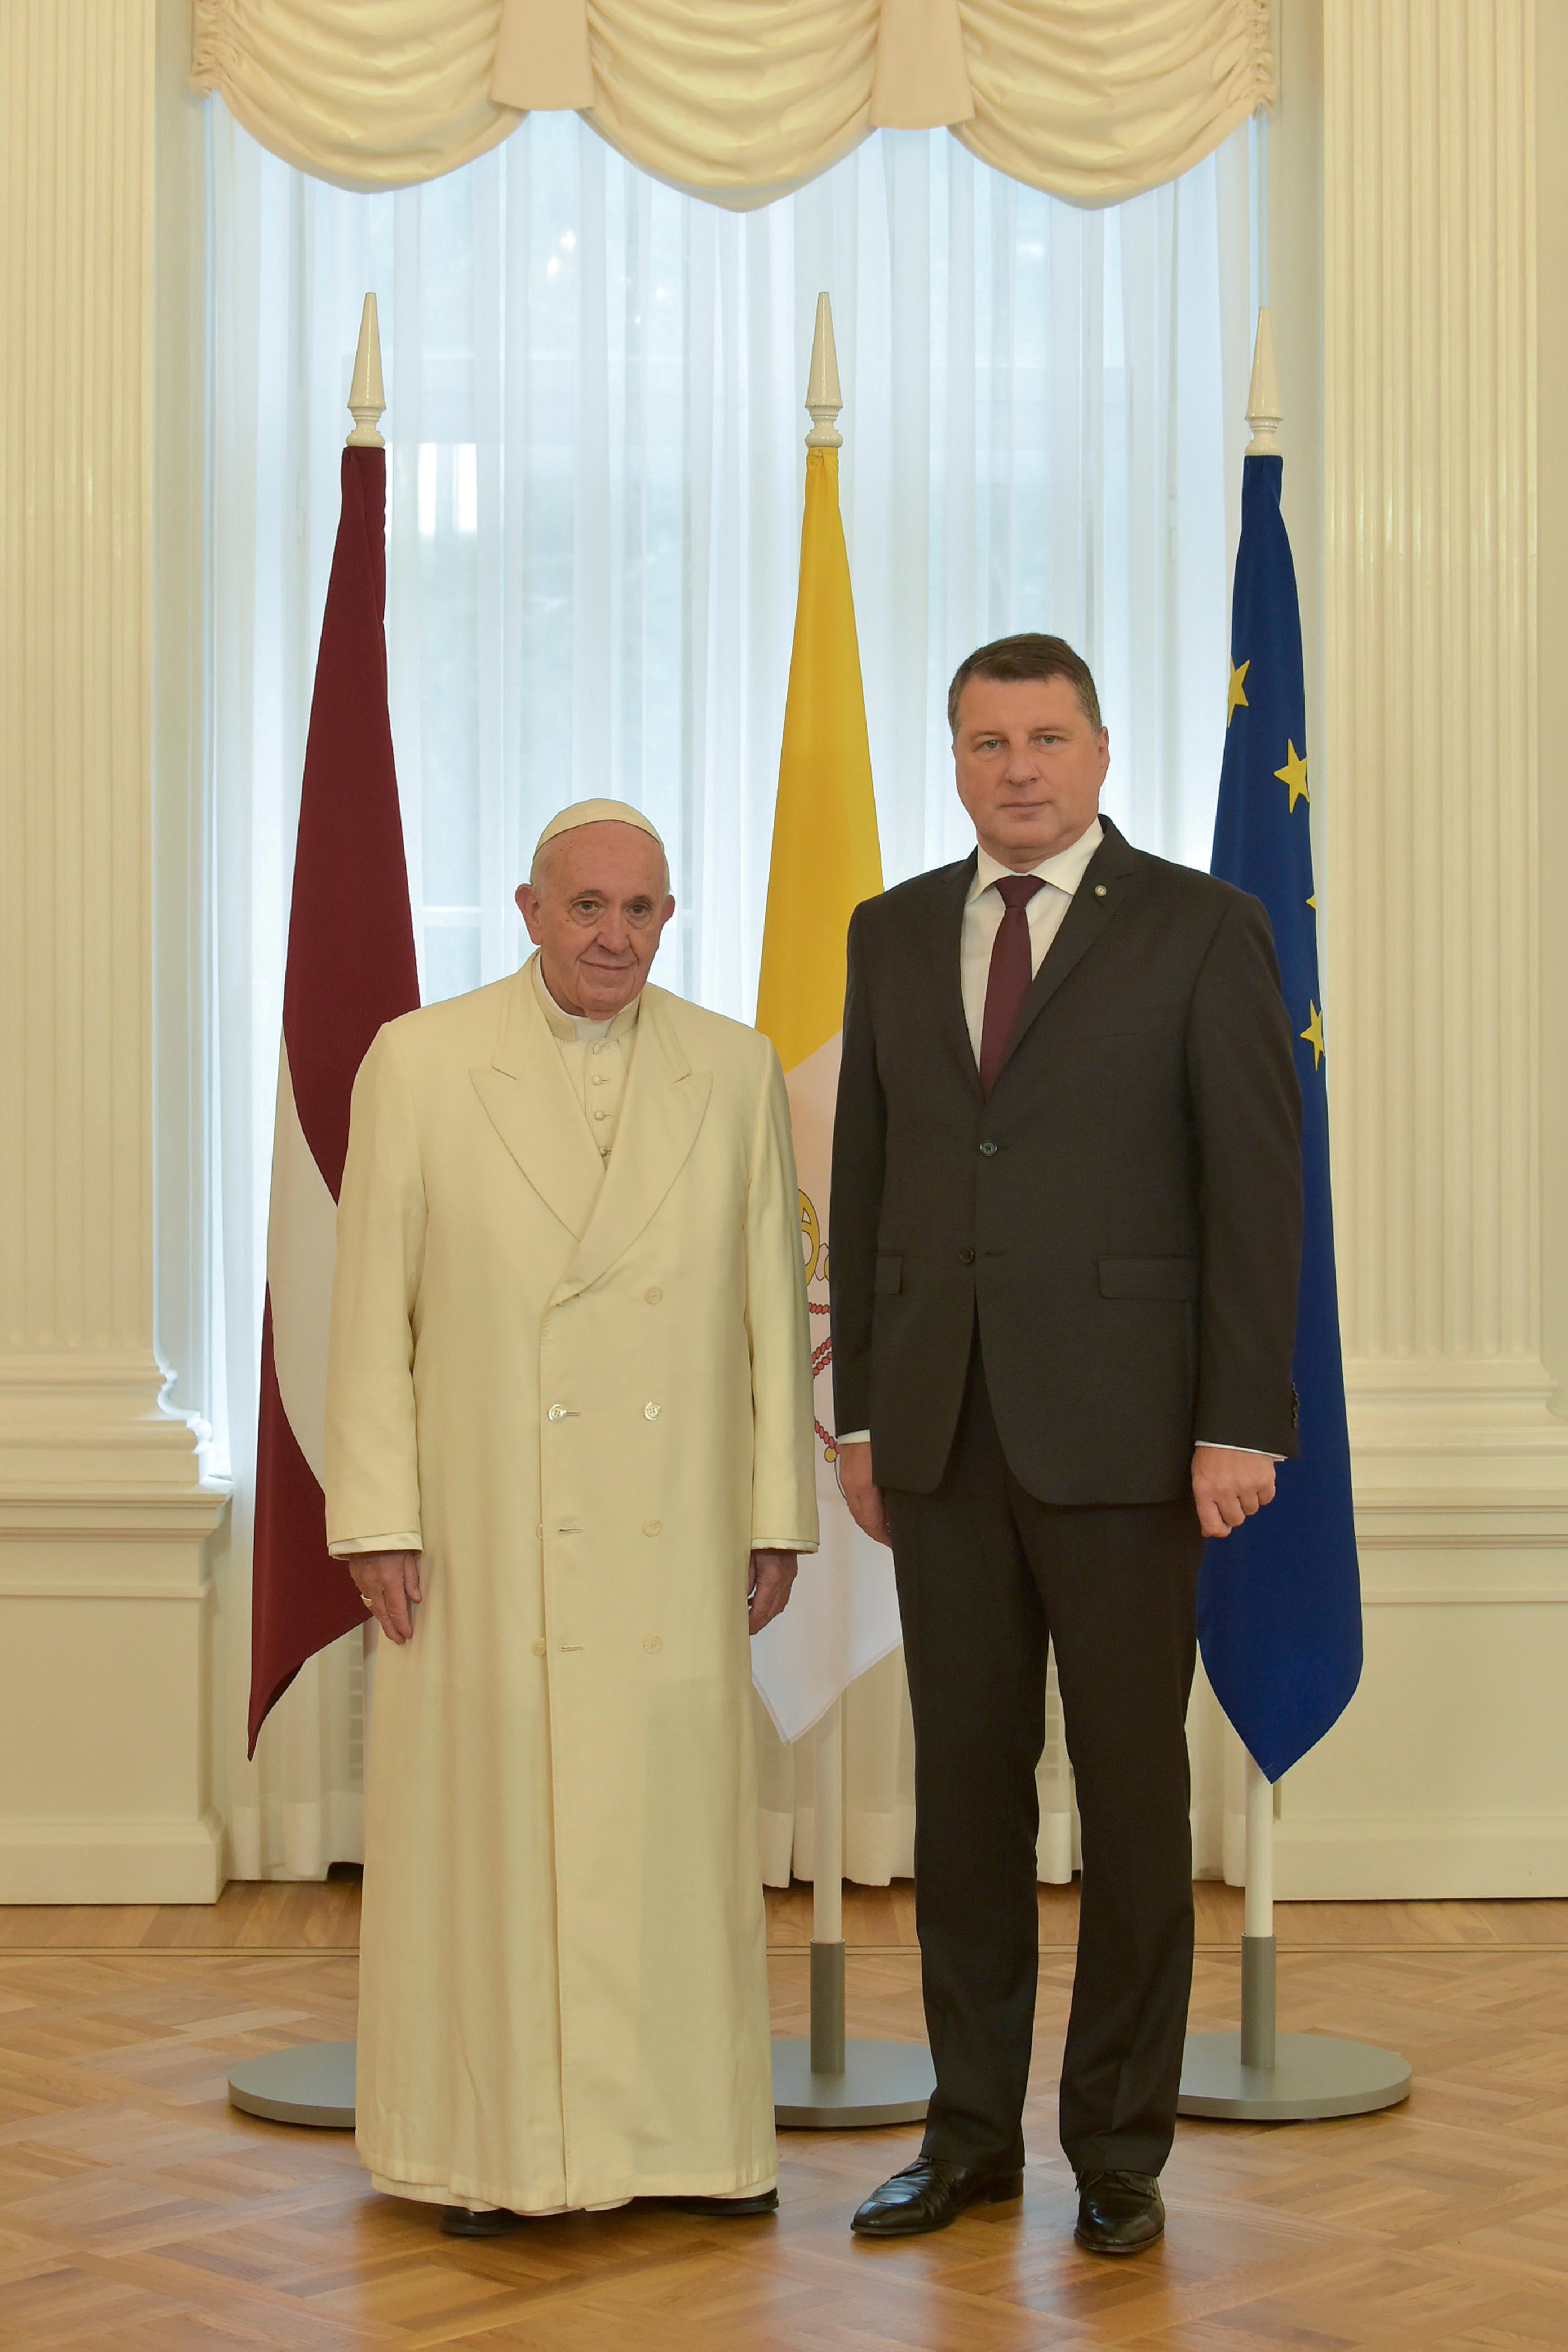 صورة تذكارية للبابا فرنسيس ورئيس لاتفيا